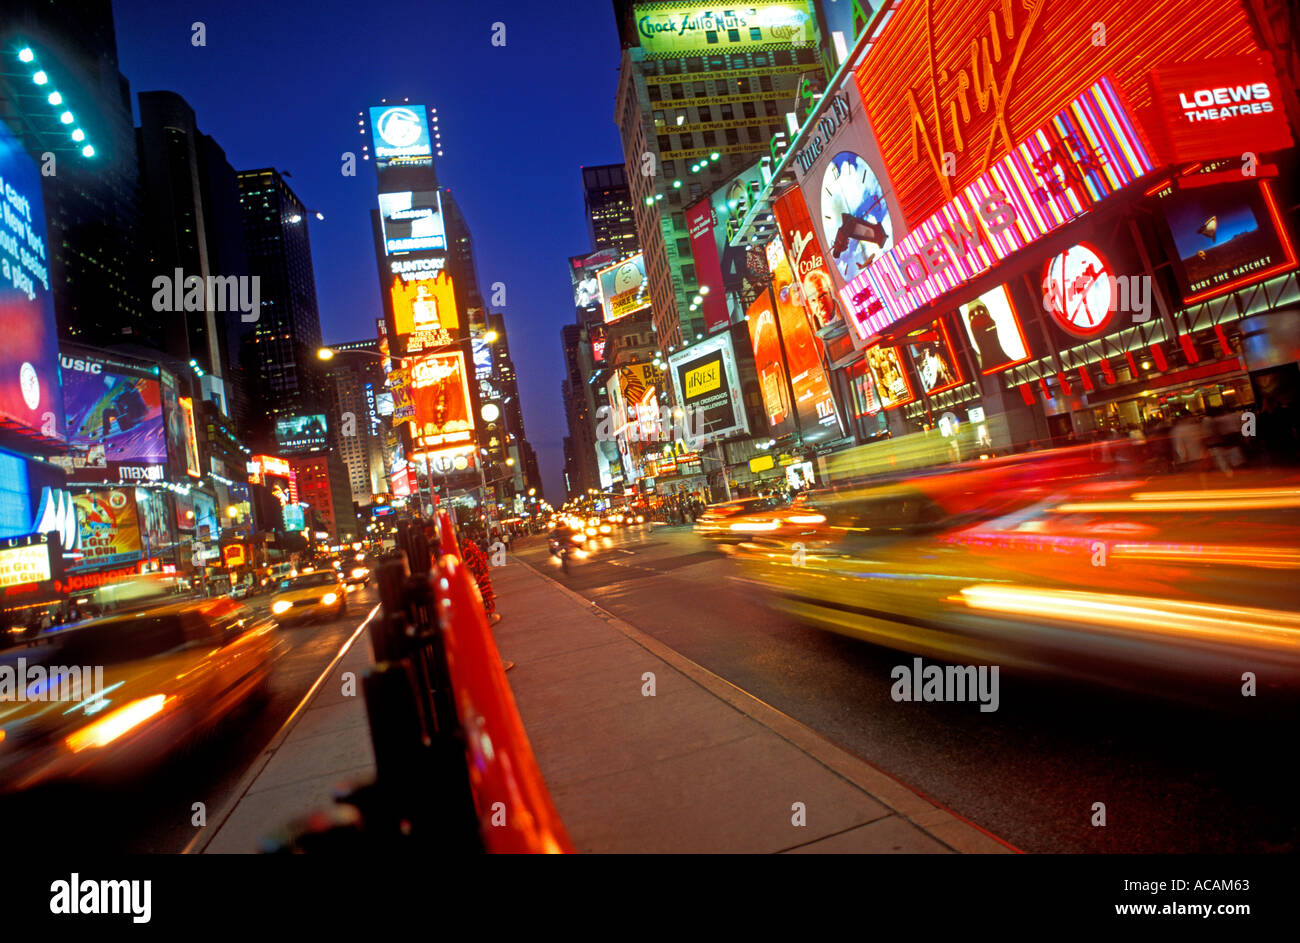 1990 New York Times Square beleuchtet auf einer geschäftigen Nacht in Manhattan New York City USA Vintage Retro Amerika Stockfoto